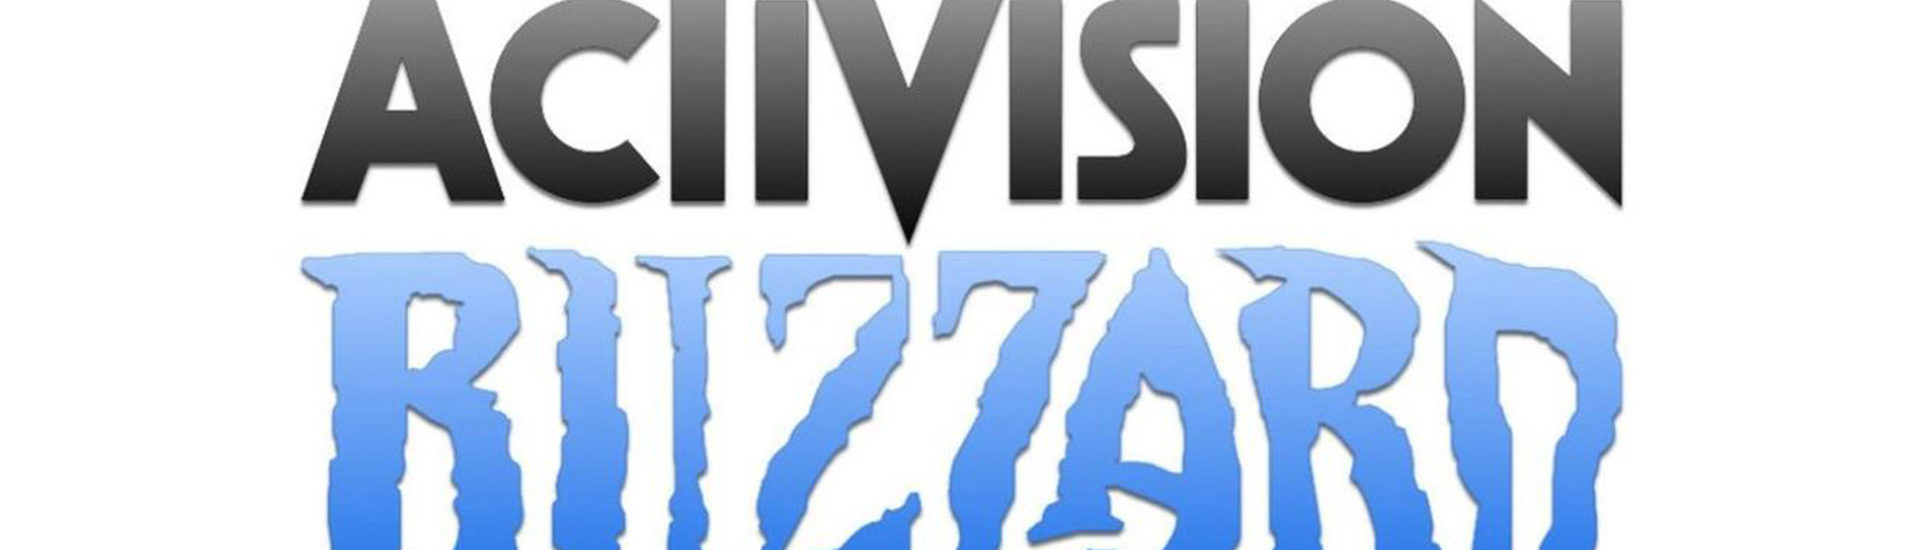 Activision Blizzard: 18 Millionen für Opfer von Belästigung